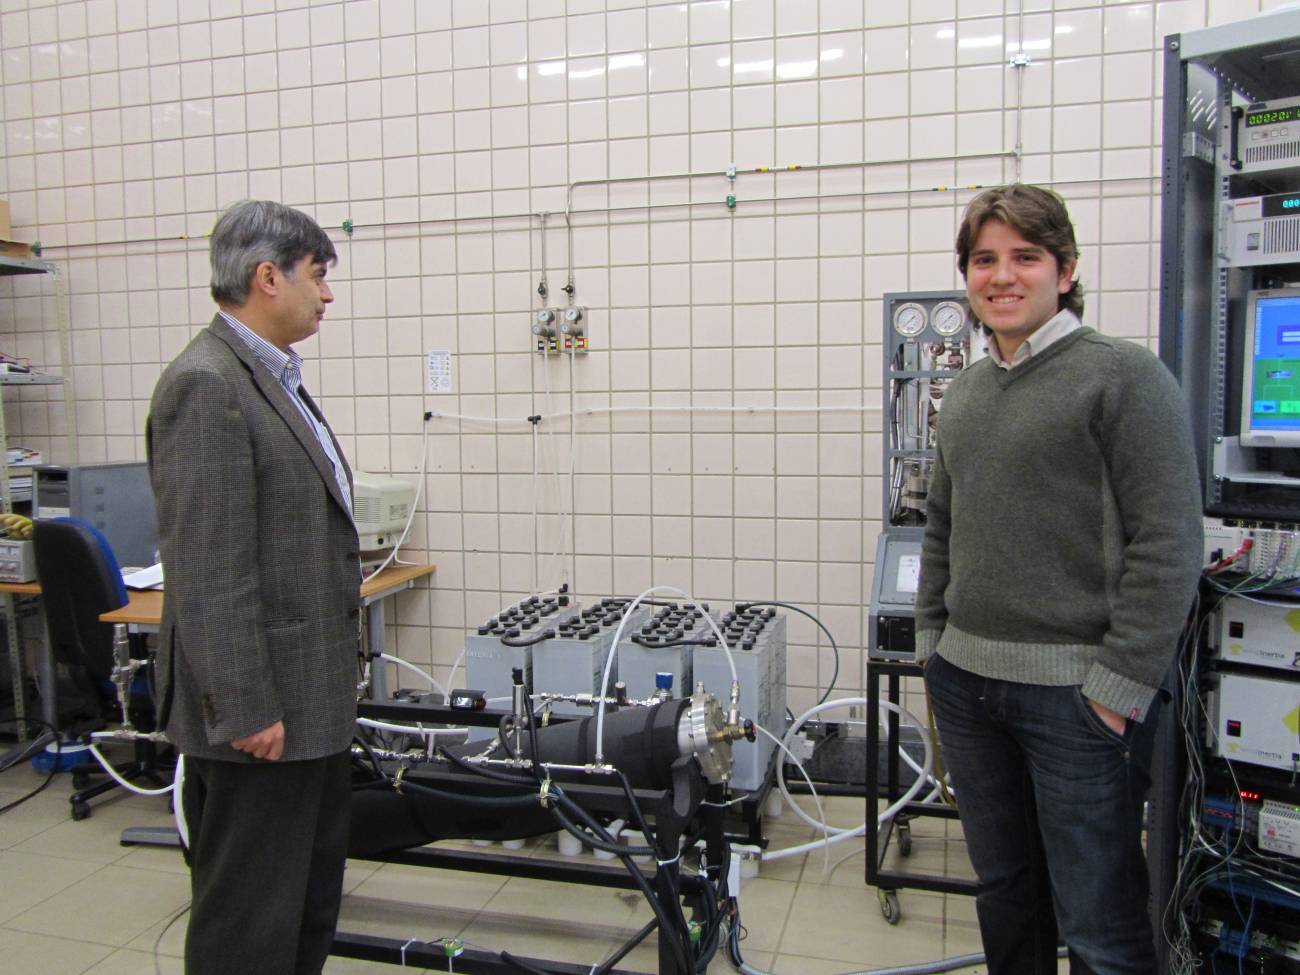 Los investigadores Felipe Rosa (izquierda) y Luis Valverde (derecha), en el laboratorio. Imagen: Fundación Descubre